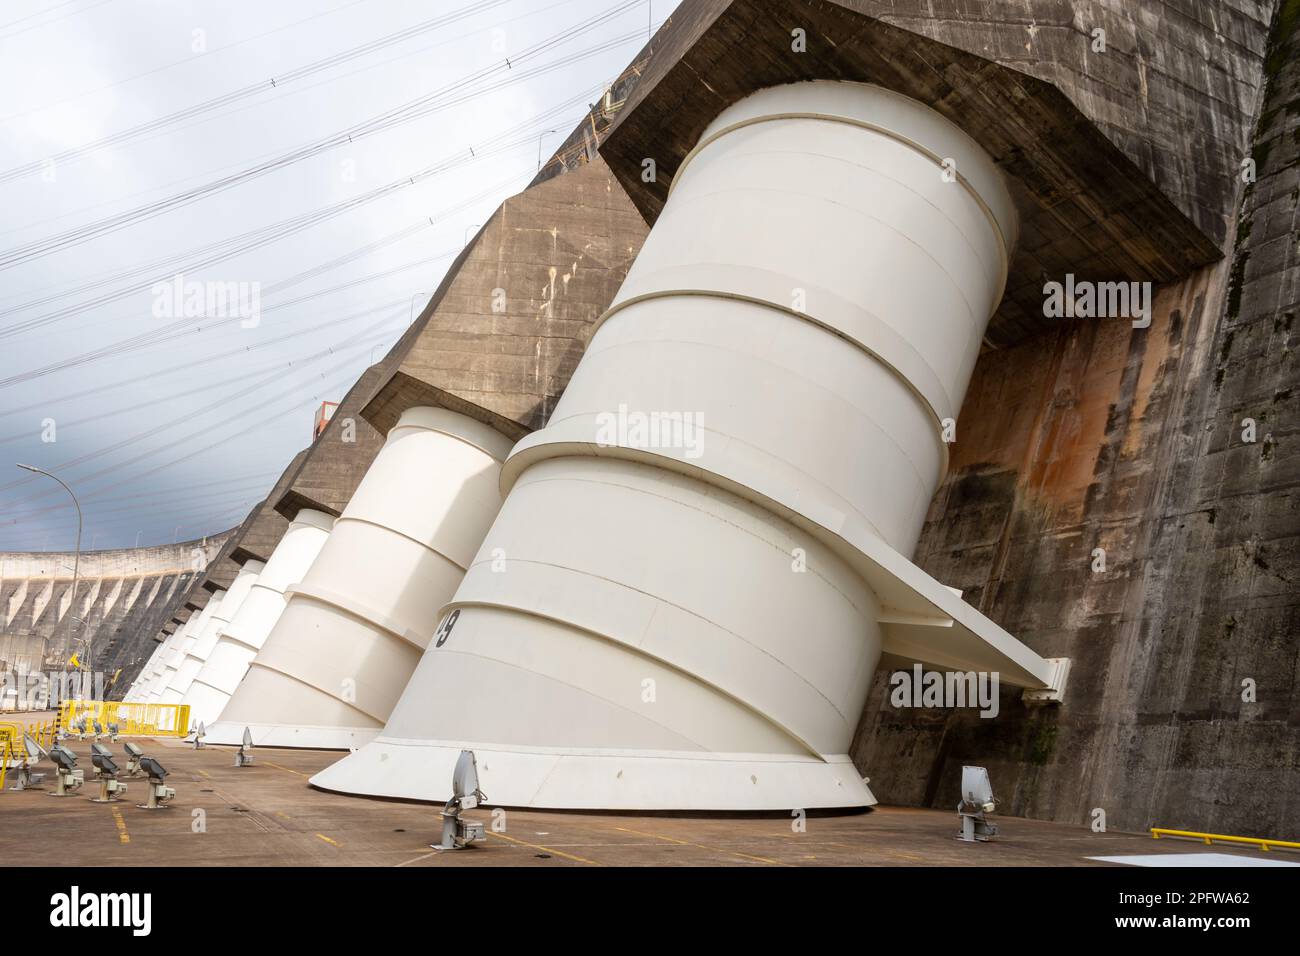 Foz do iguacu, brésil - 15 janvier 2023: Vue extérieure des turbines de la centrale hydroélectrique d'Itaipu à Foz do iguacu, brésil et Paraguay. Banque D'Images